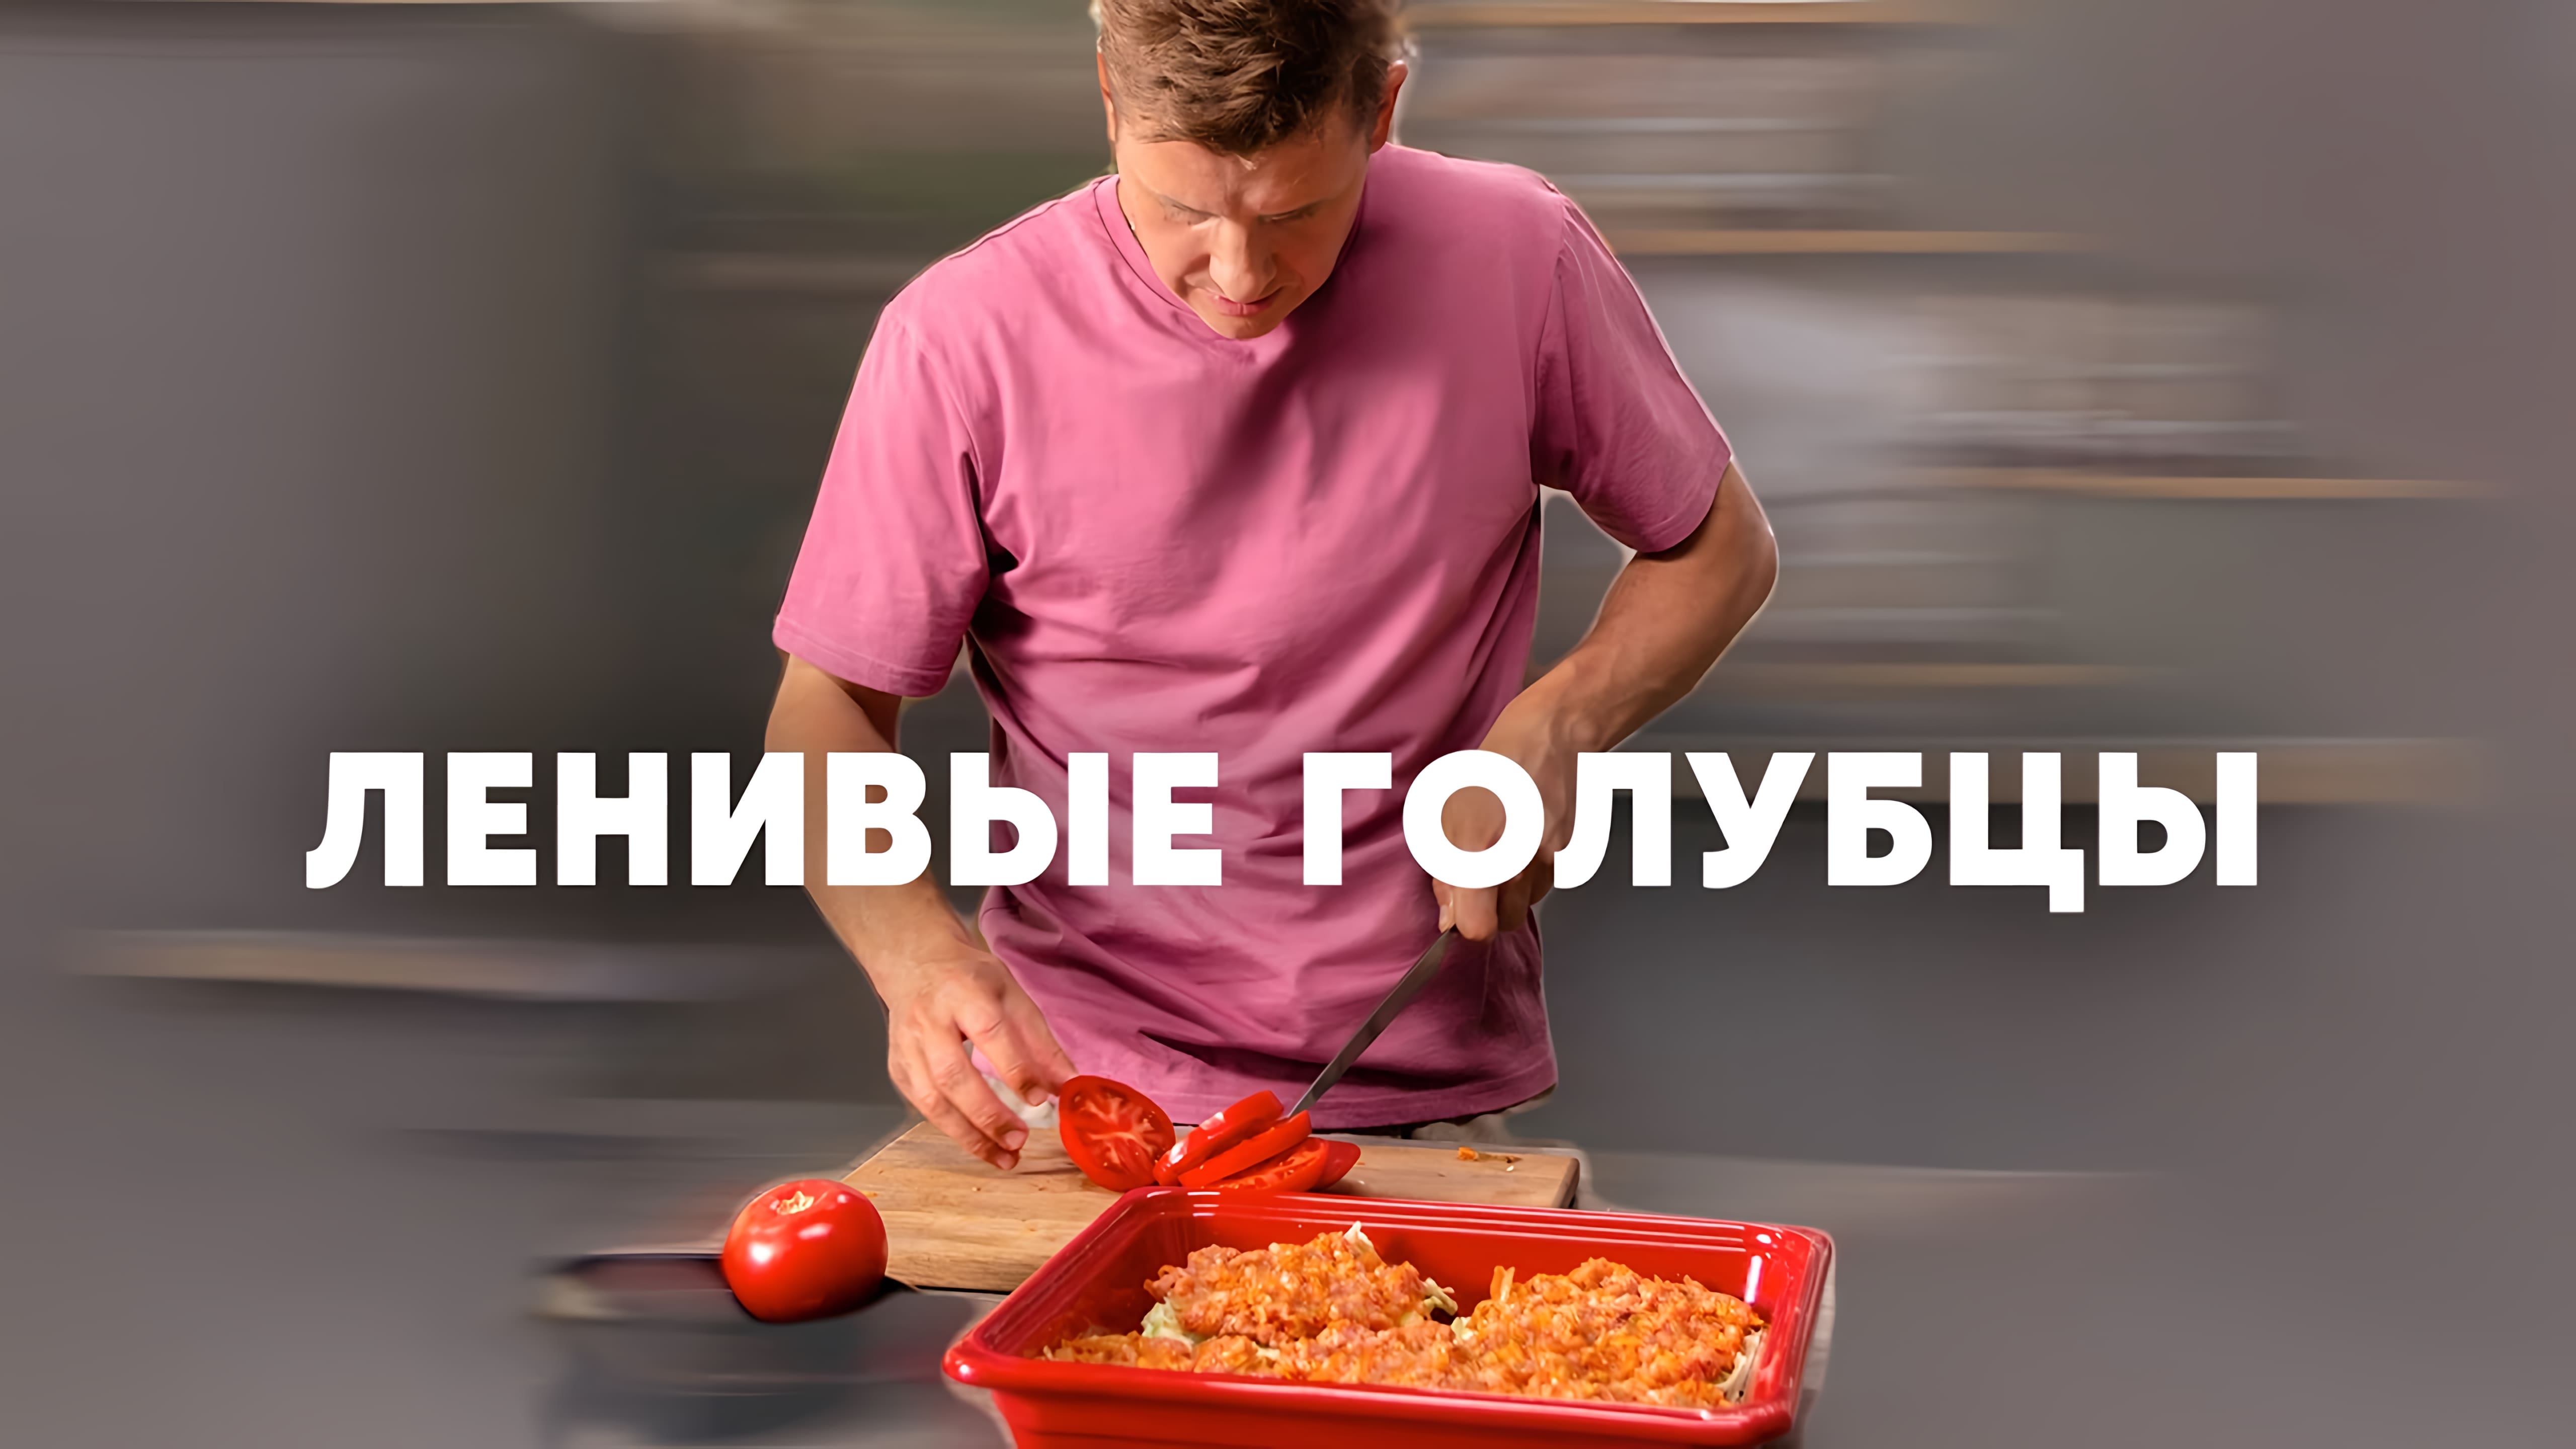 Видео: ЛЕНИВЫЕ ЗАПЕЧЁННЫЕ ГОЛУБЦЫ — рецепт от шефа Бельковича | ПроСто кухня |